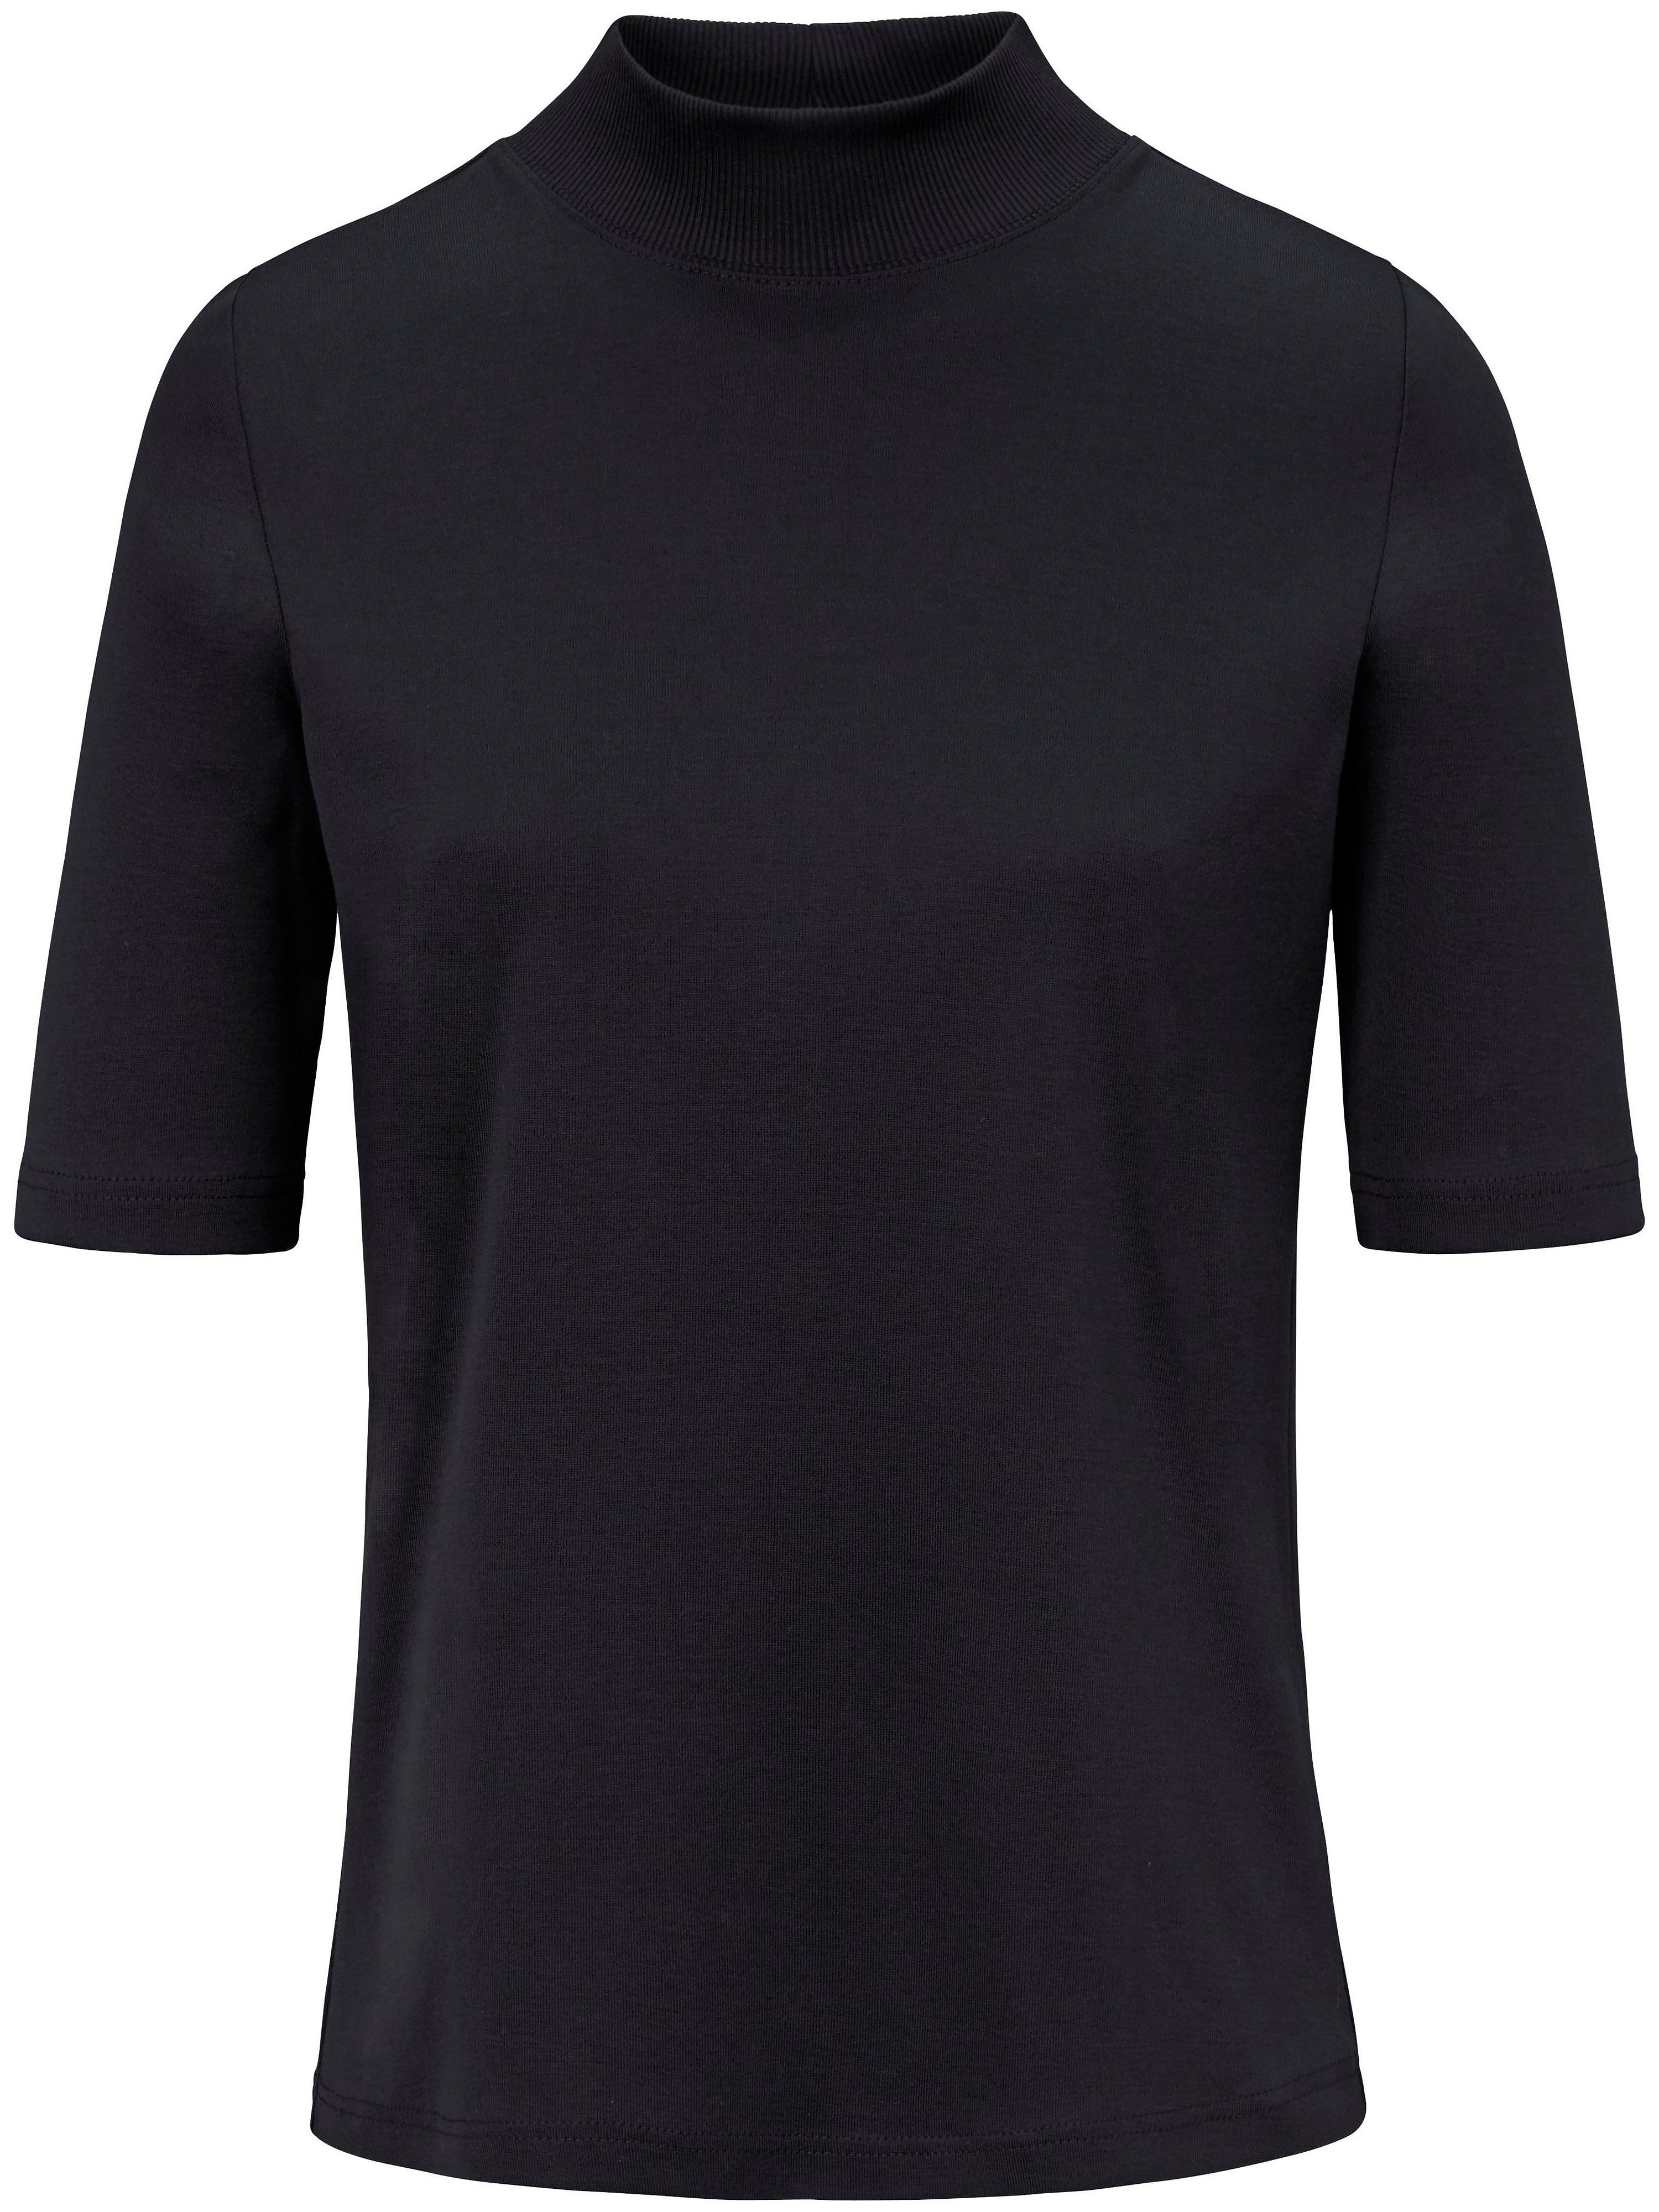 Le T-shirt 100% coton  Efixelle noir taille 40